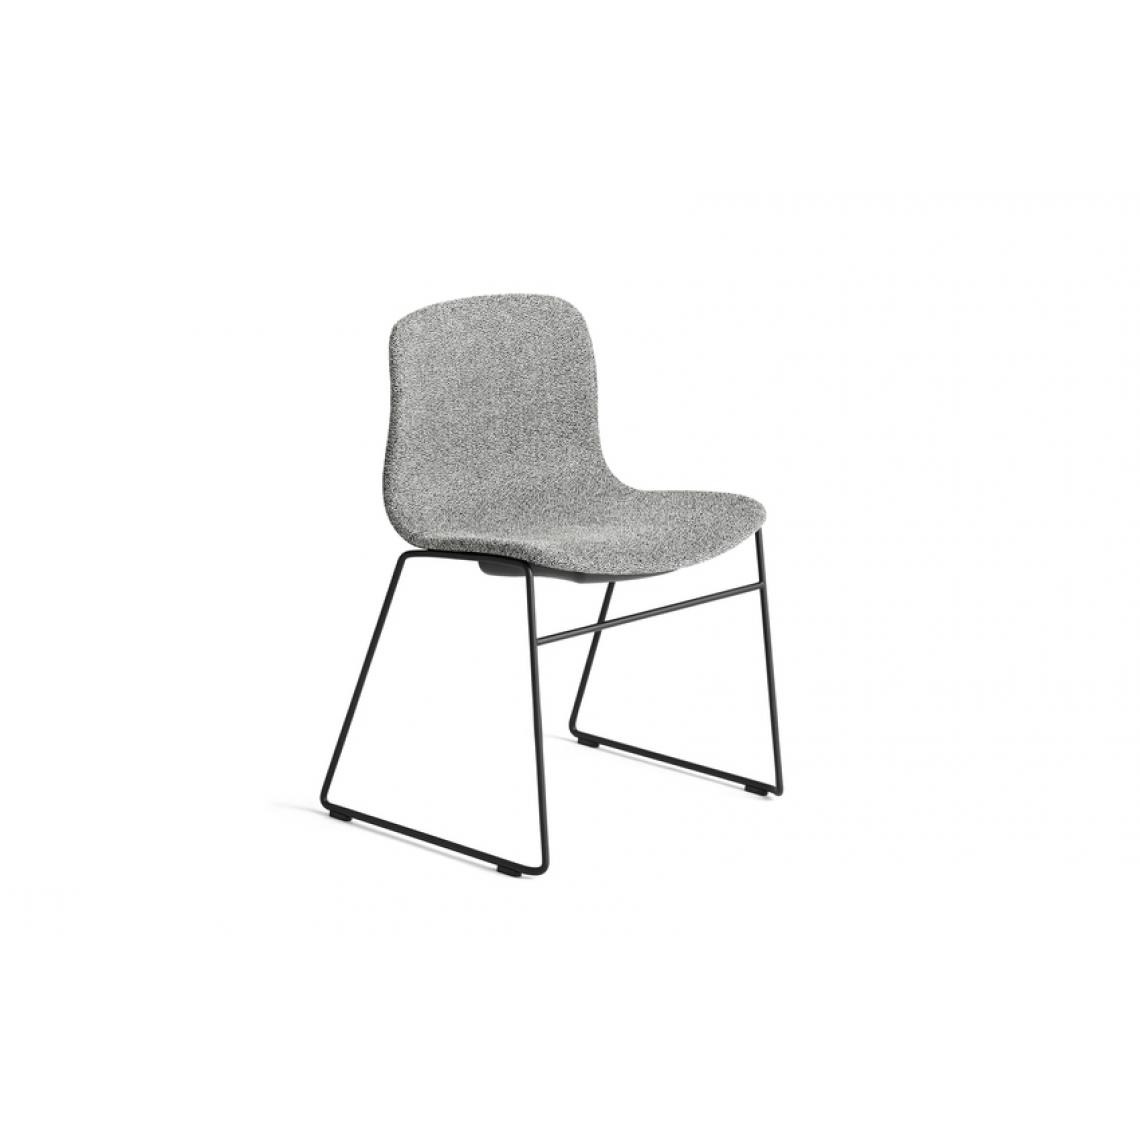 Hay - About a Chair AAC 09 - KvadratOlaviByHay03 - noir - Chaises